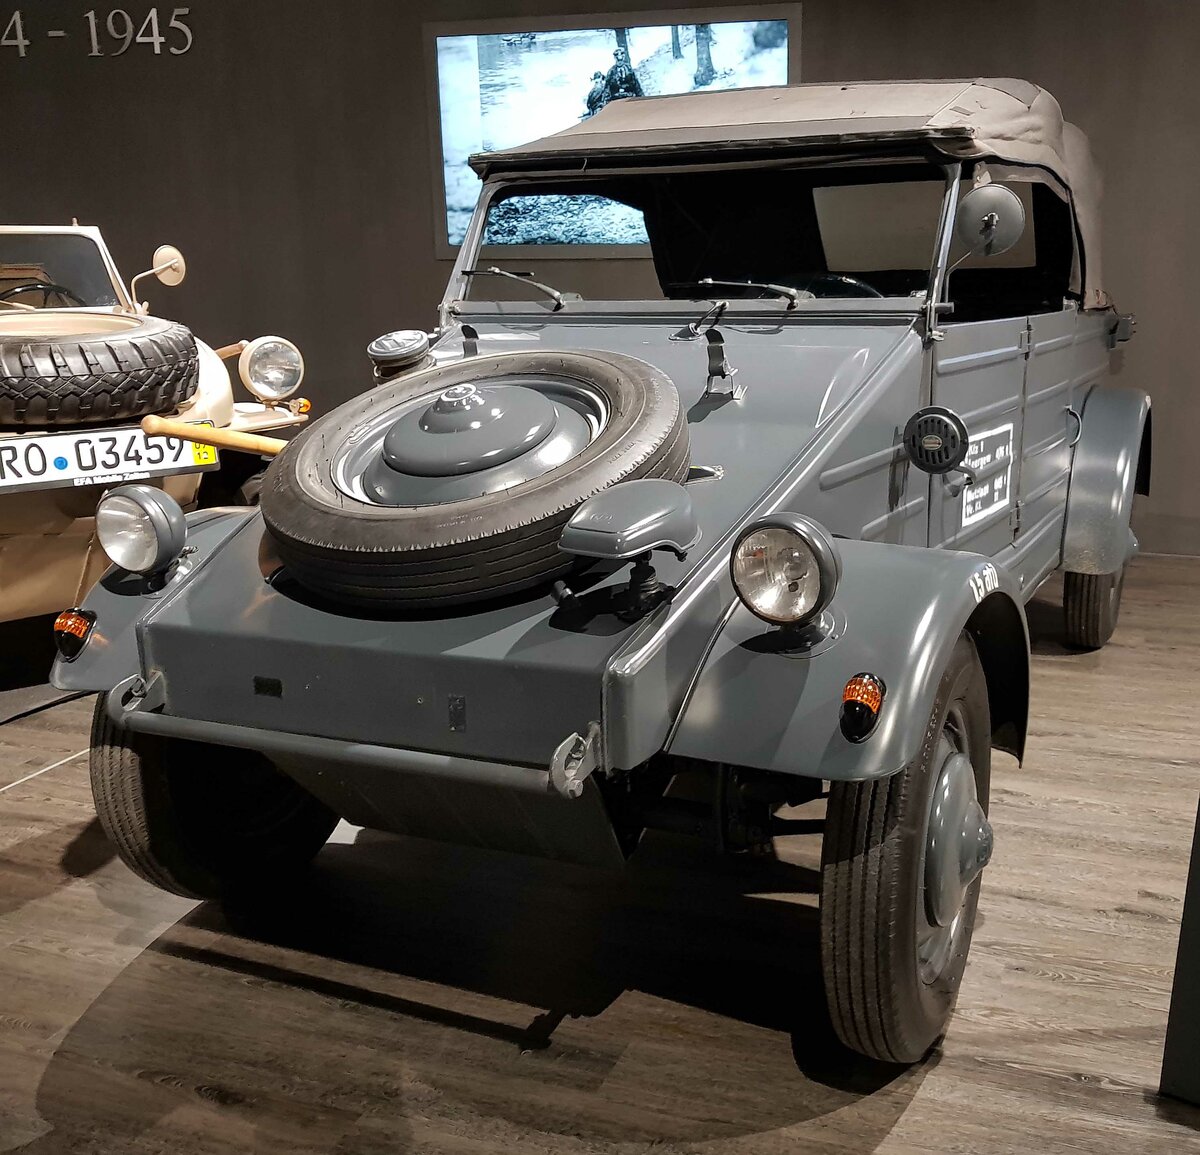 =VW Typ 82, Bauzeit 1940 - 1945,  1131 ccm, 25 PS, 80 km/h, ausgestellt im EFA Museum in Amerang, 06-2022